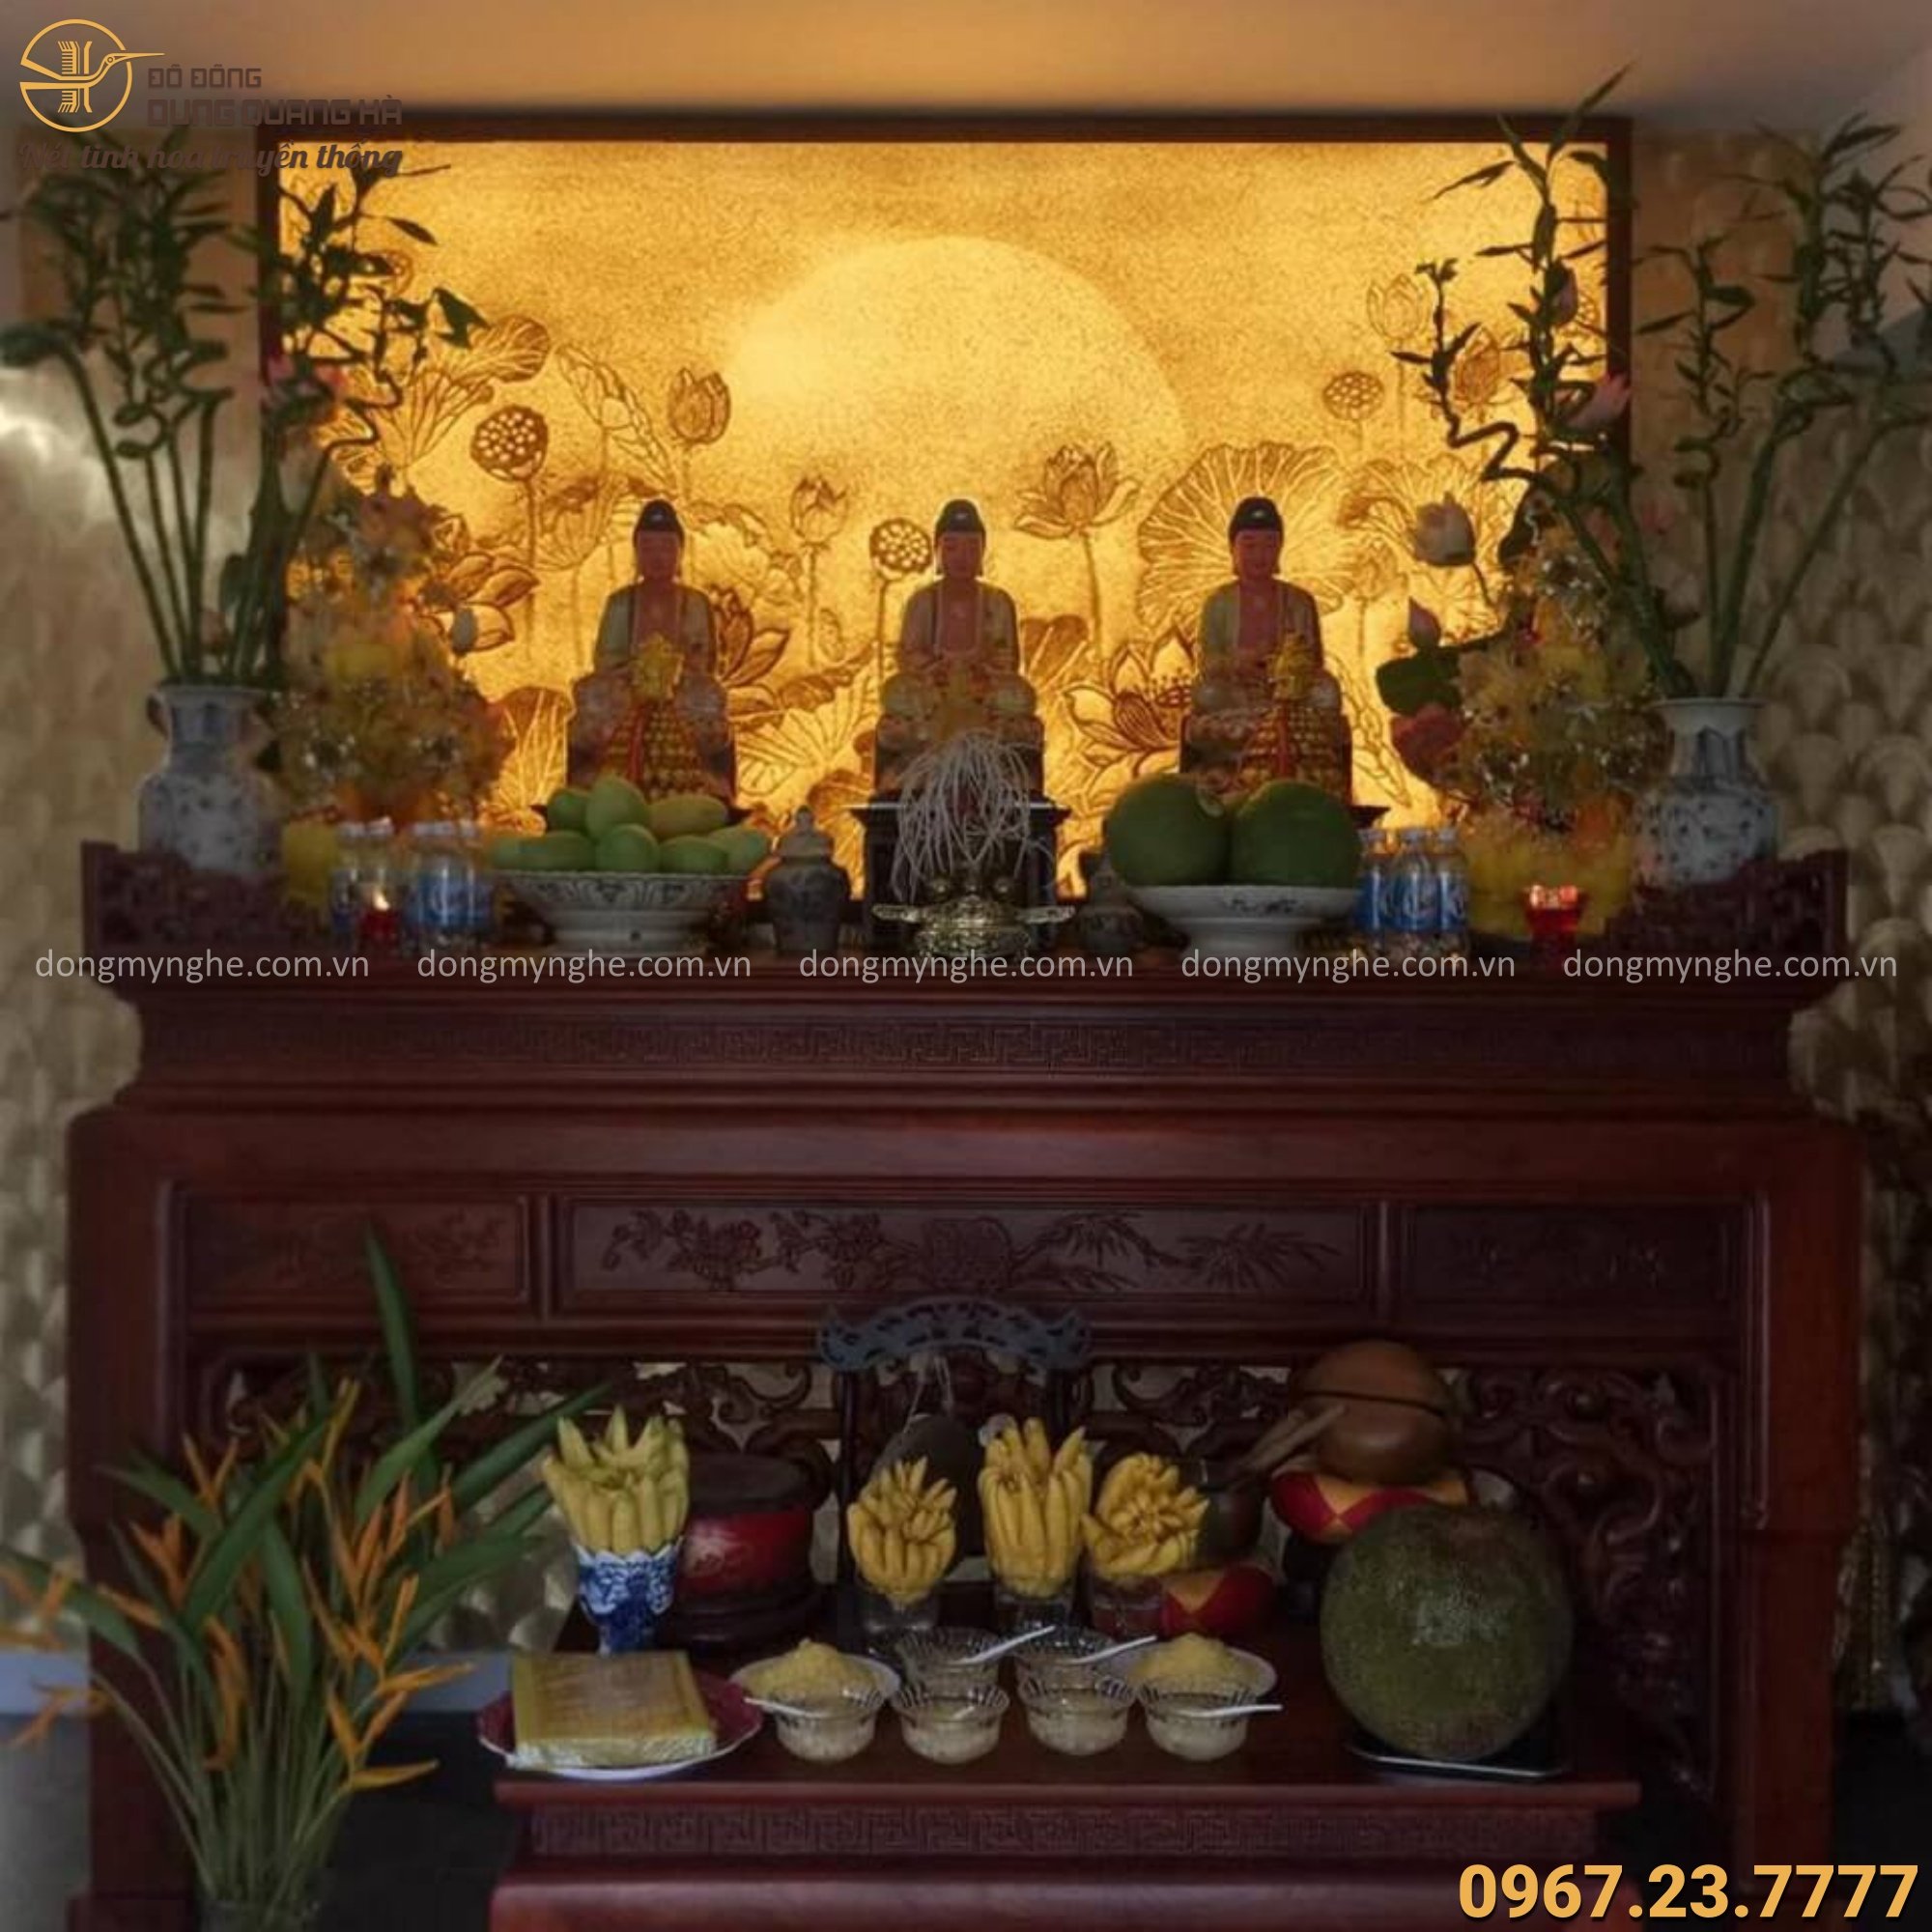 hình ảnh bàn thờ Phật tại nhà